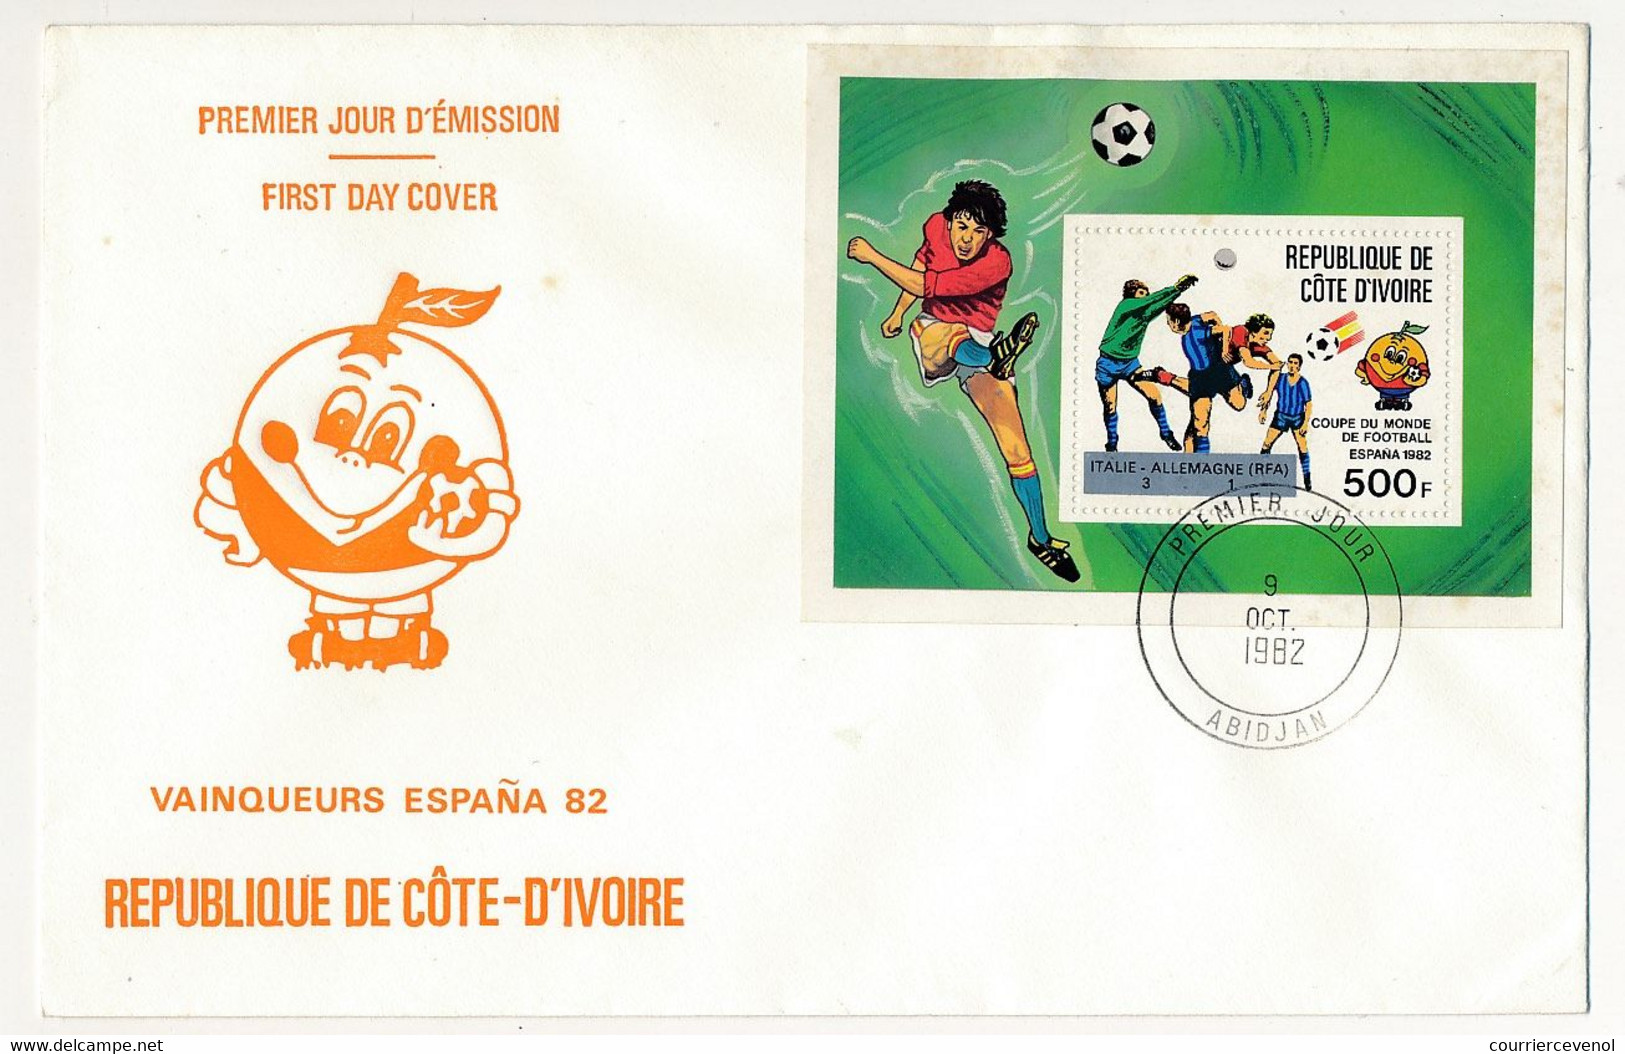 CÔTE D'IVOIRE - 4 Env FDC - 5 Val Coupe Du Monde De Football 1982 Espagne + BF Id. 19 Sept 1981 - Abidjan - Ivory Coast (1960-...)